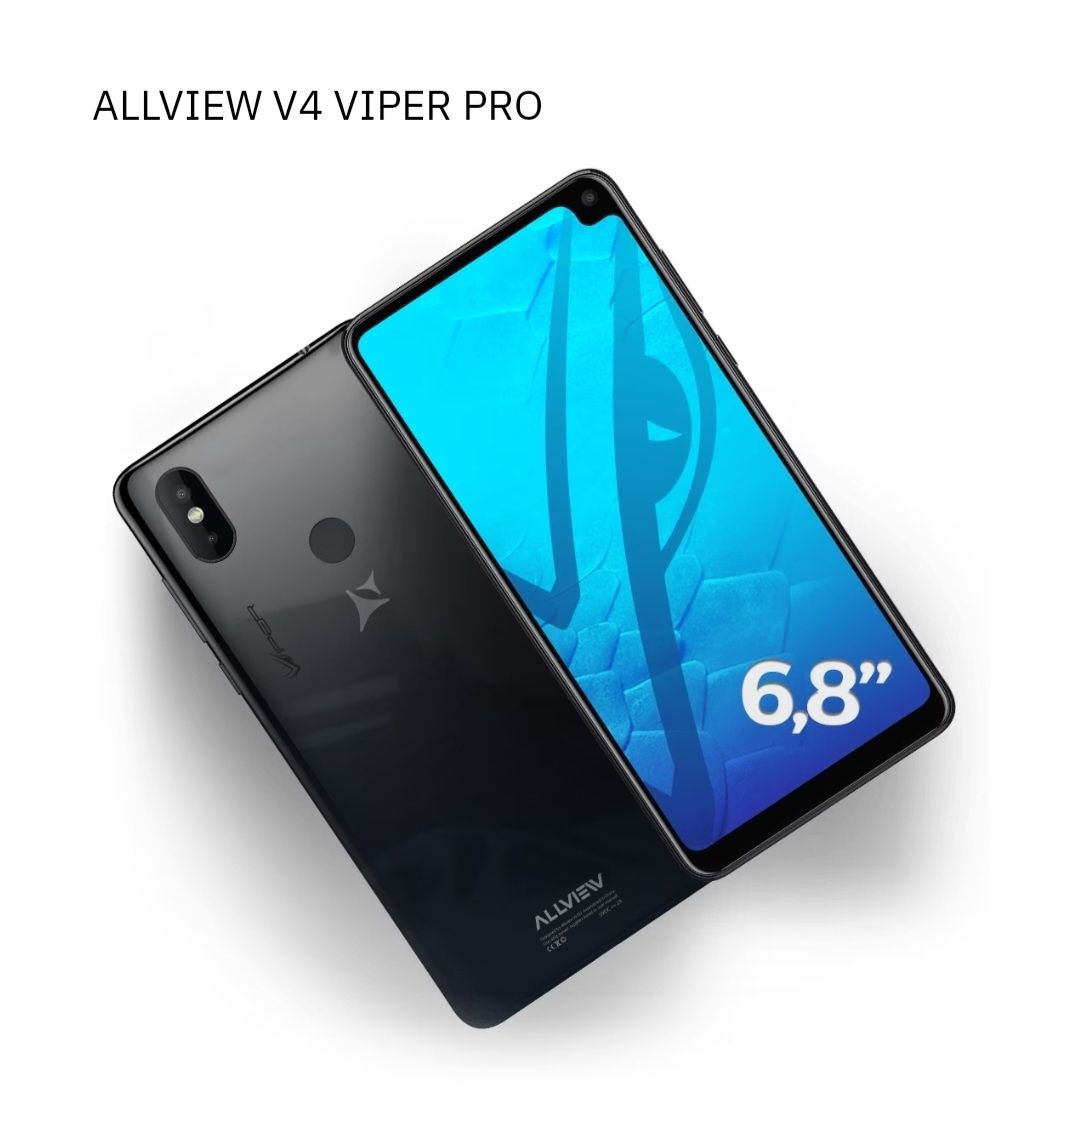 Allview V4 Viper Pro